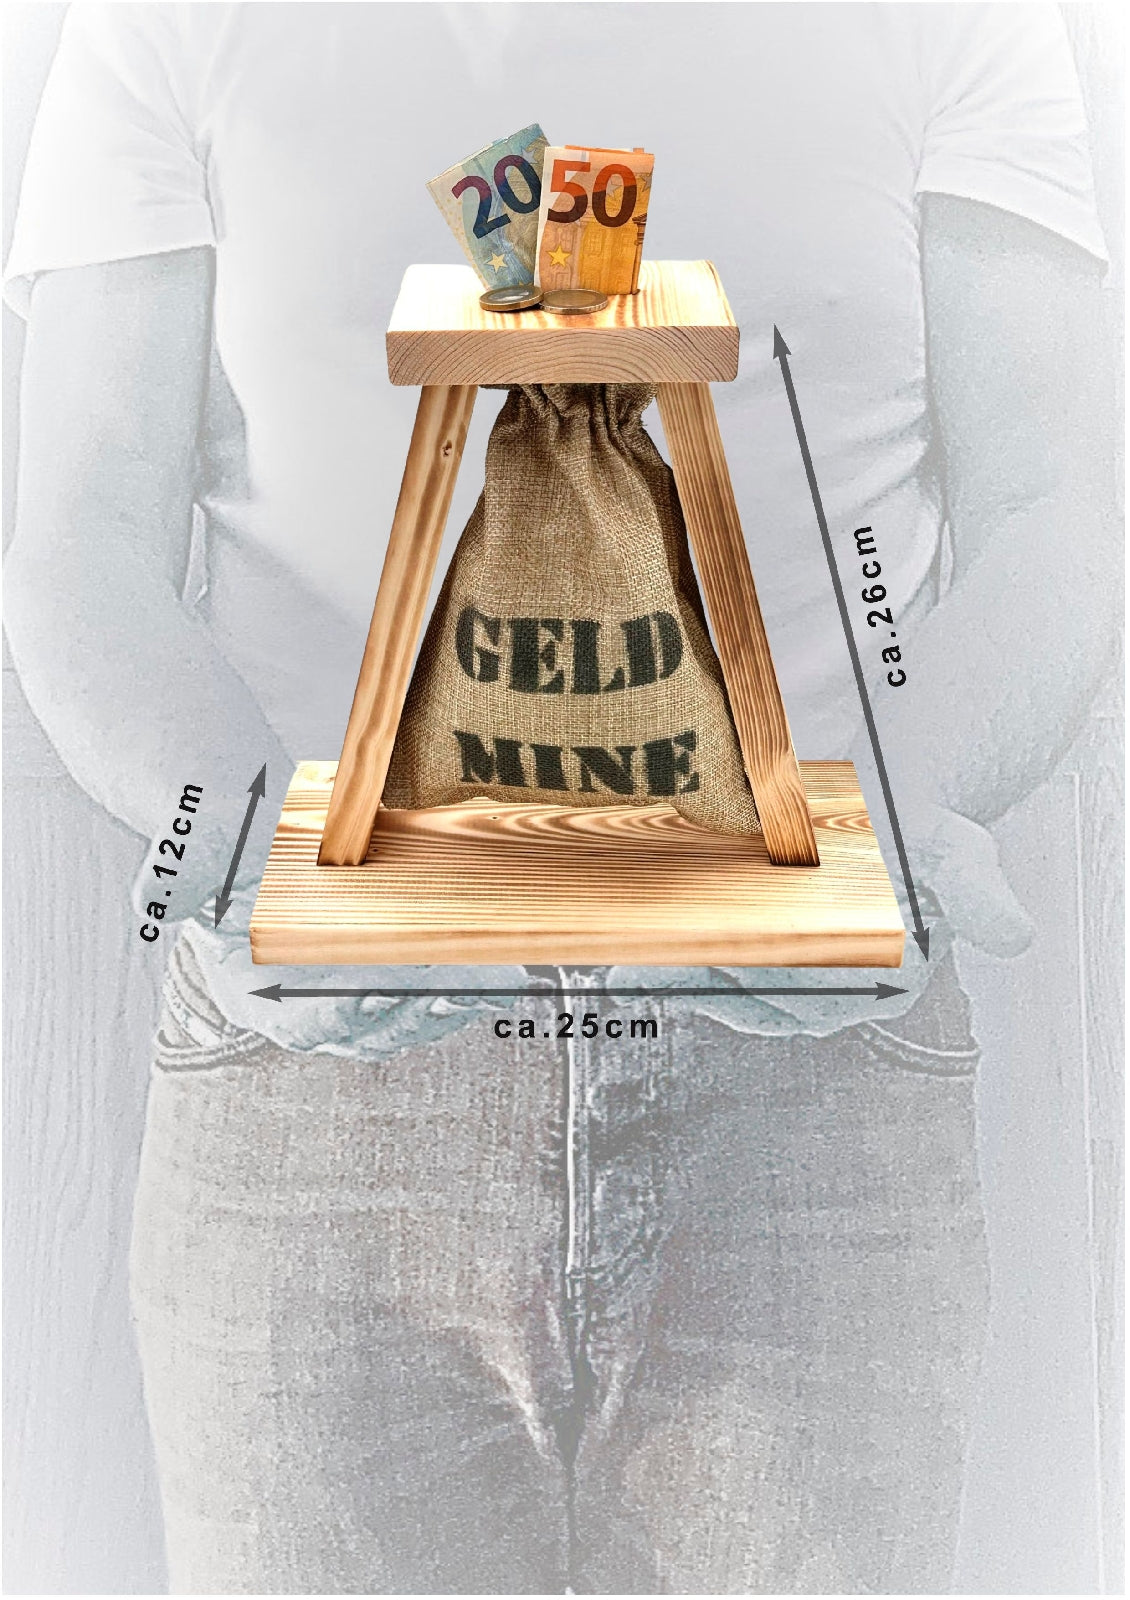 Eiserne Reserve Geld-Mine Spardose Geschenk - lustiges Geldgeschenk handgemacht aus Holz